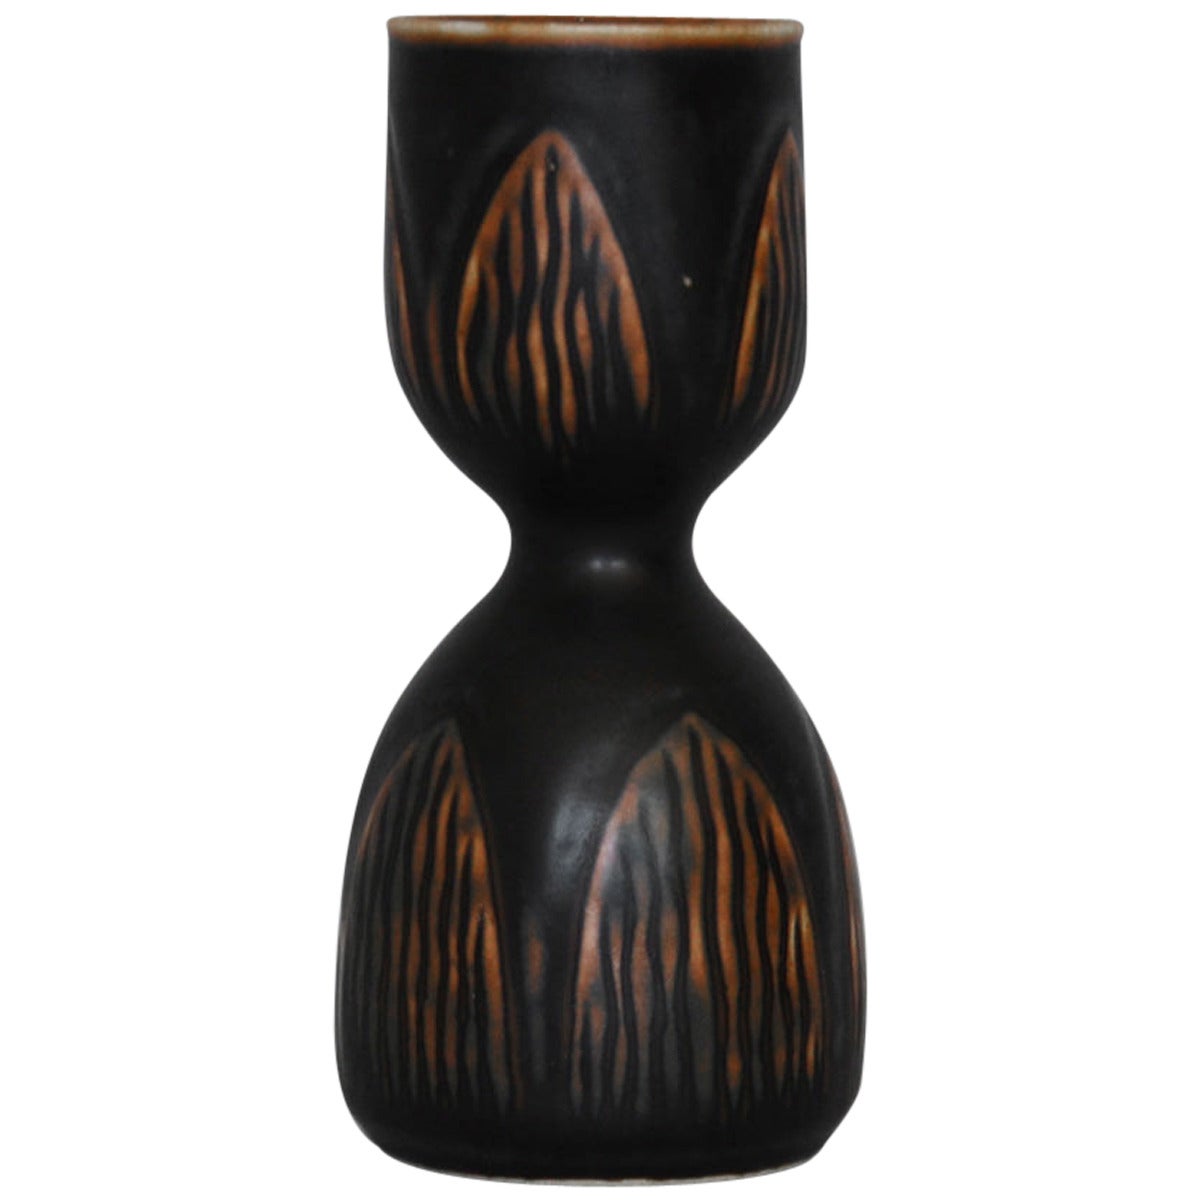 Onion Vase by Gerd Bøgelund